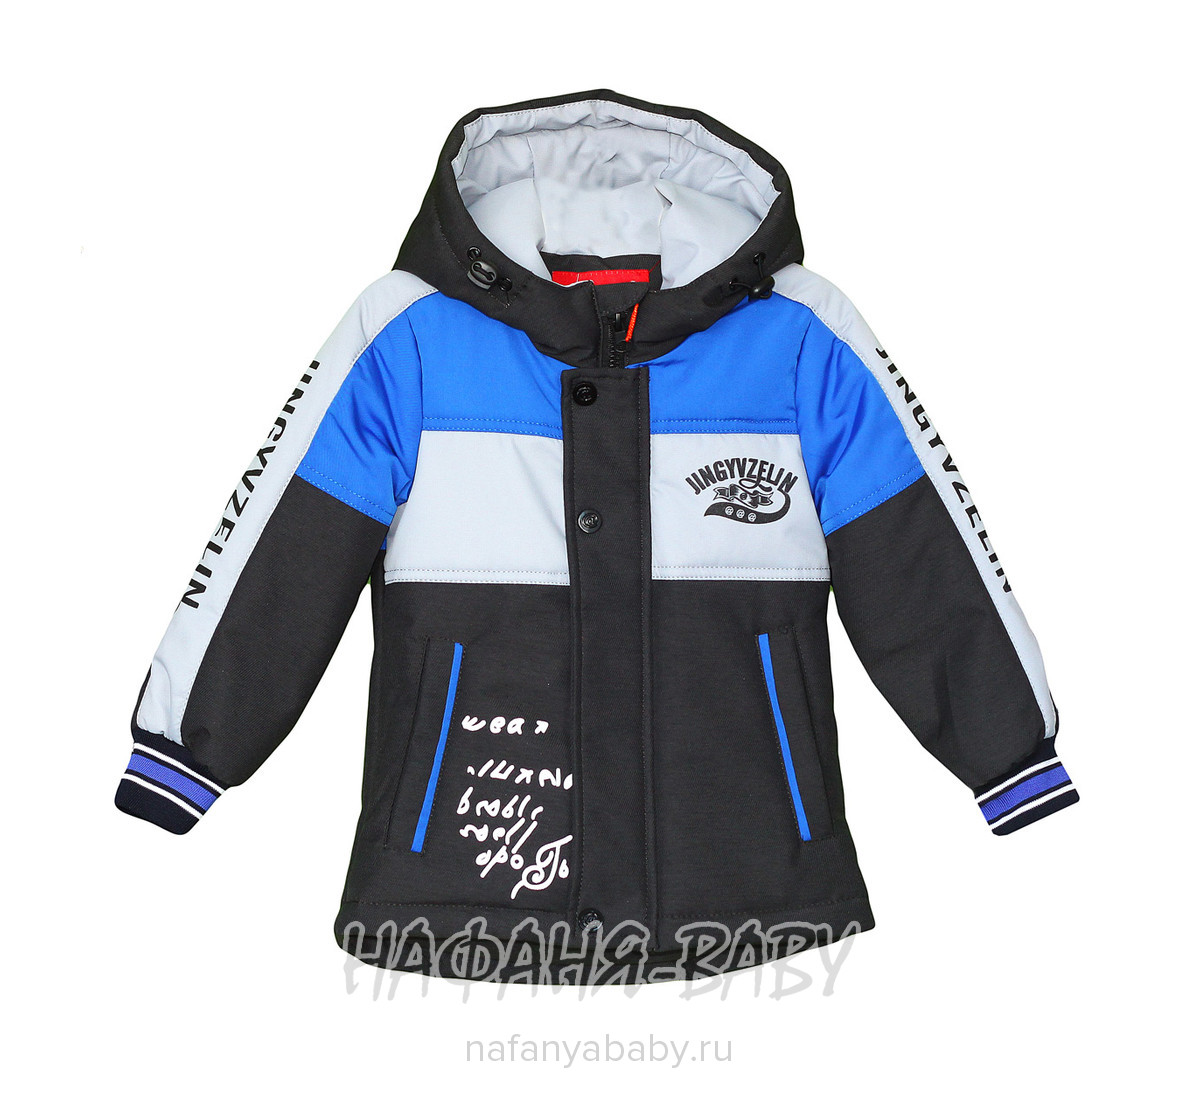 Детская демисезонная куртка AET арт: 7461, 5-9 лет, 1-4 года, оптом Китай (Пекин)